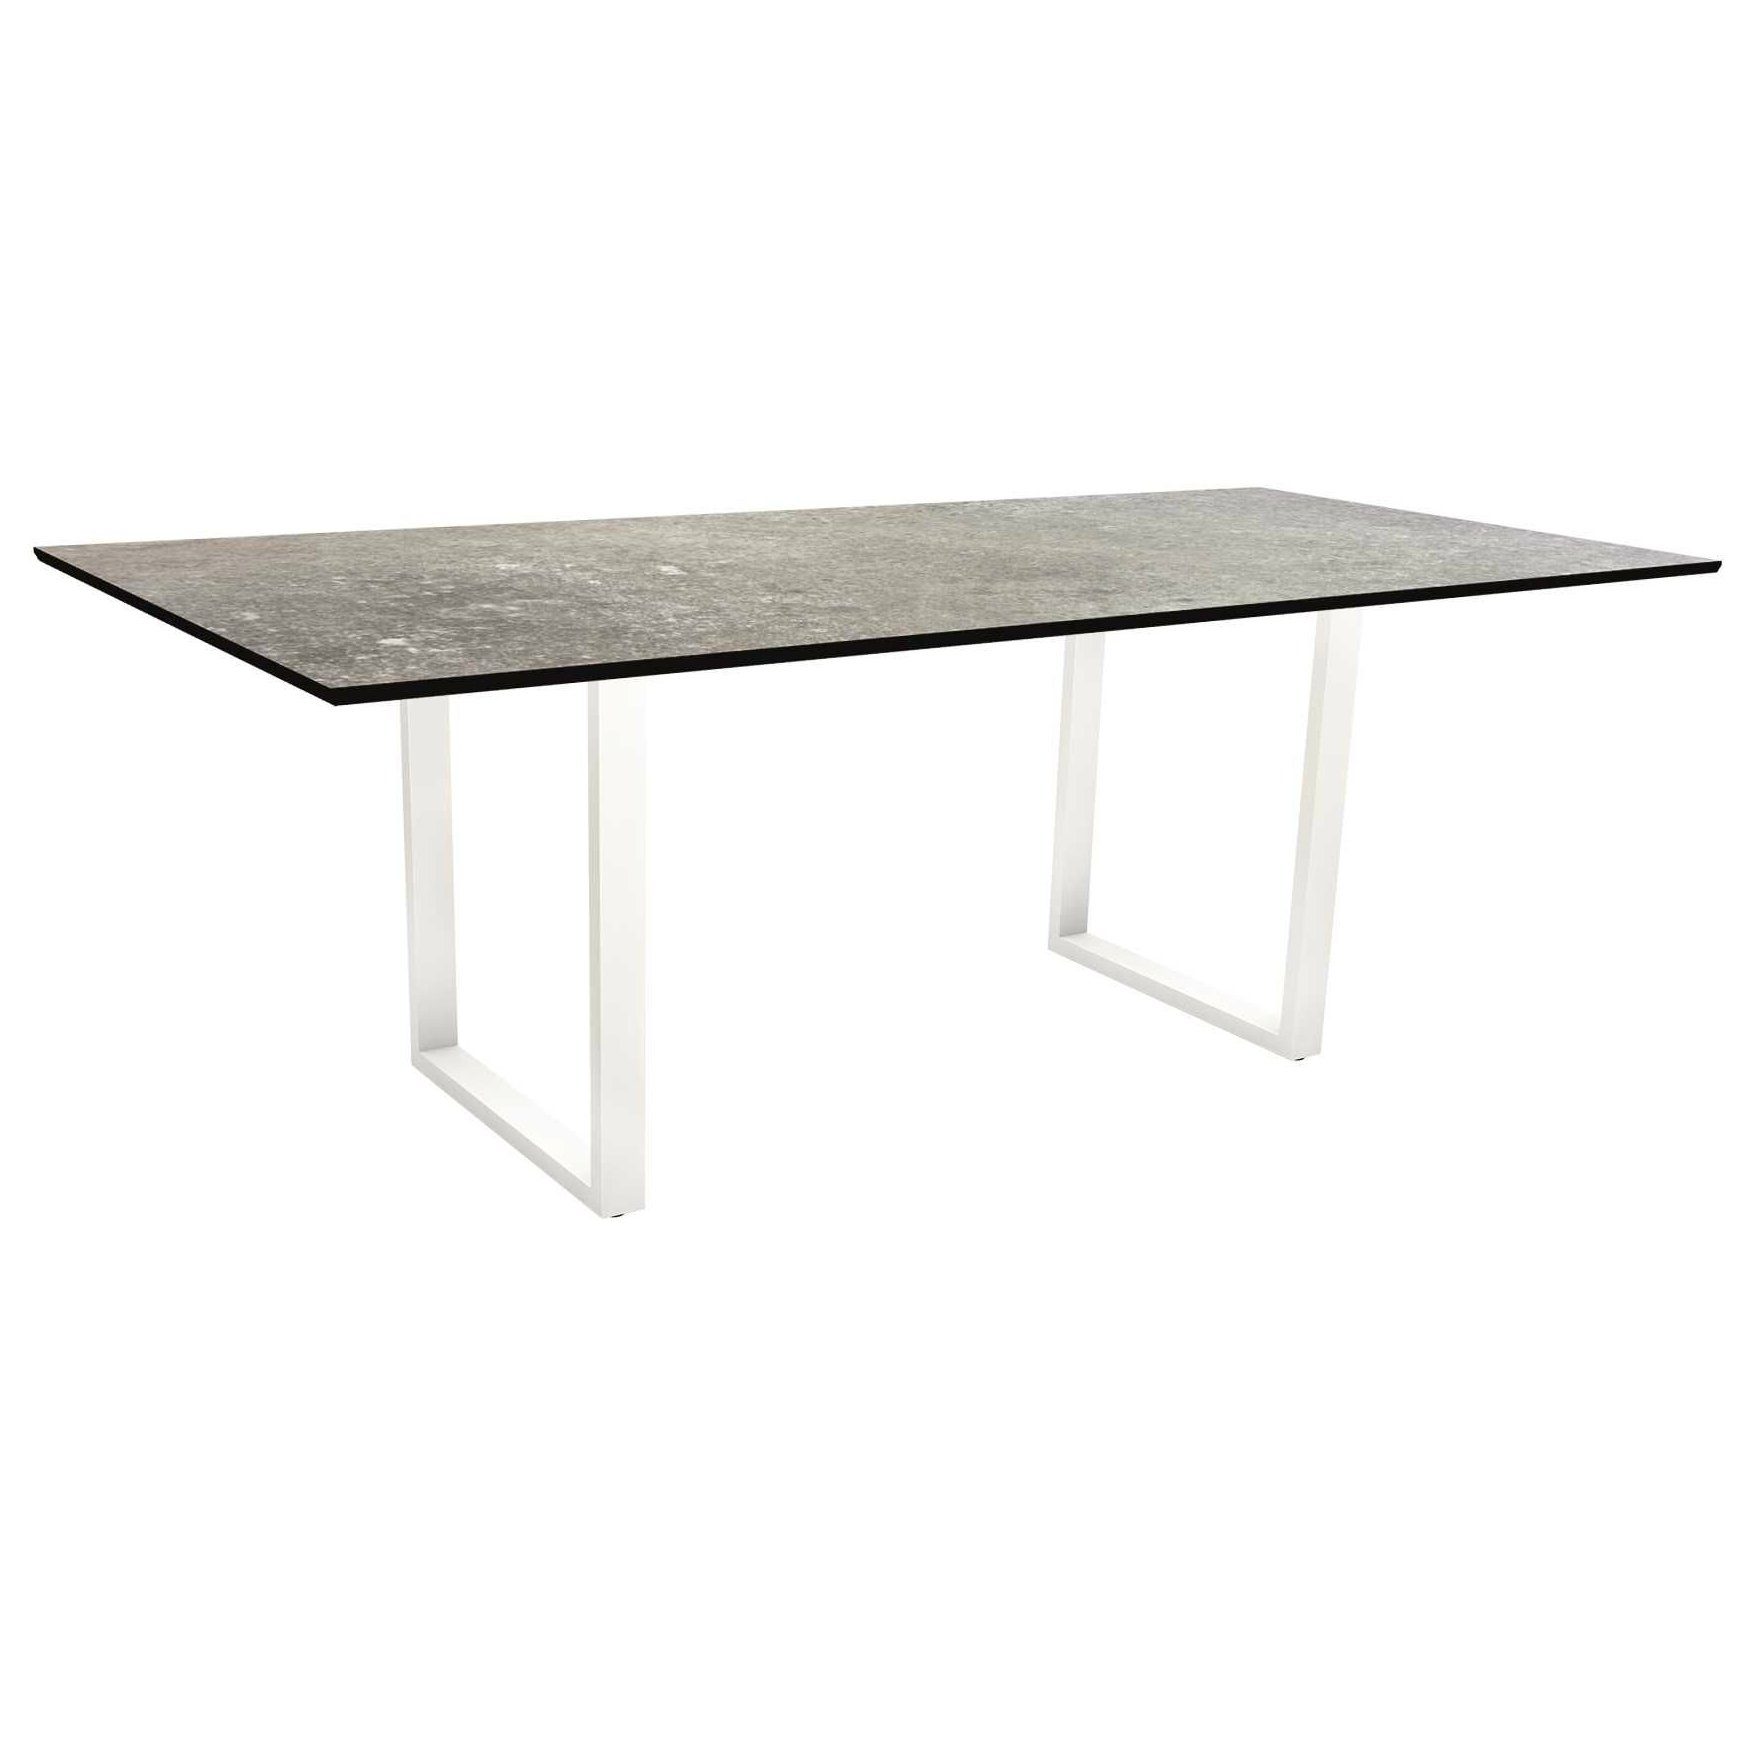 Stern Kufentisch, Maße: 200x100x73 cm, Gestell Aluminium weiß, Tischplatte HPL Vintage stone